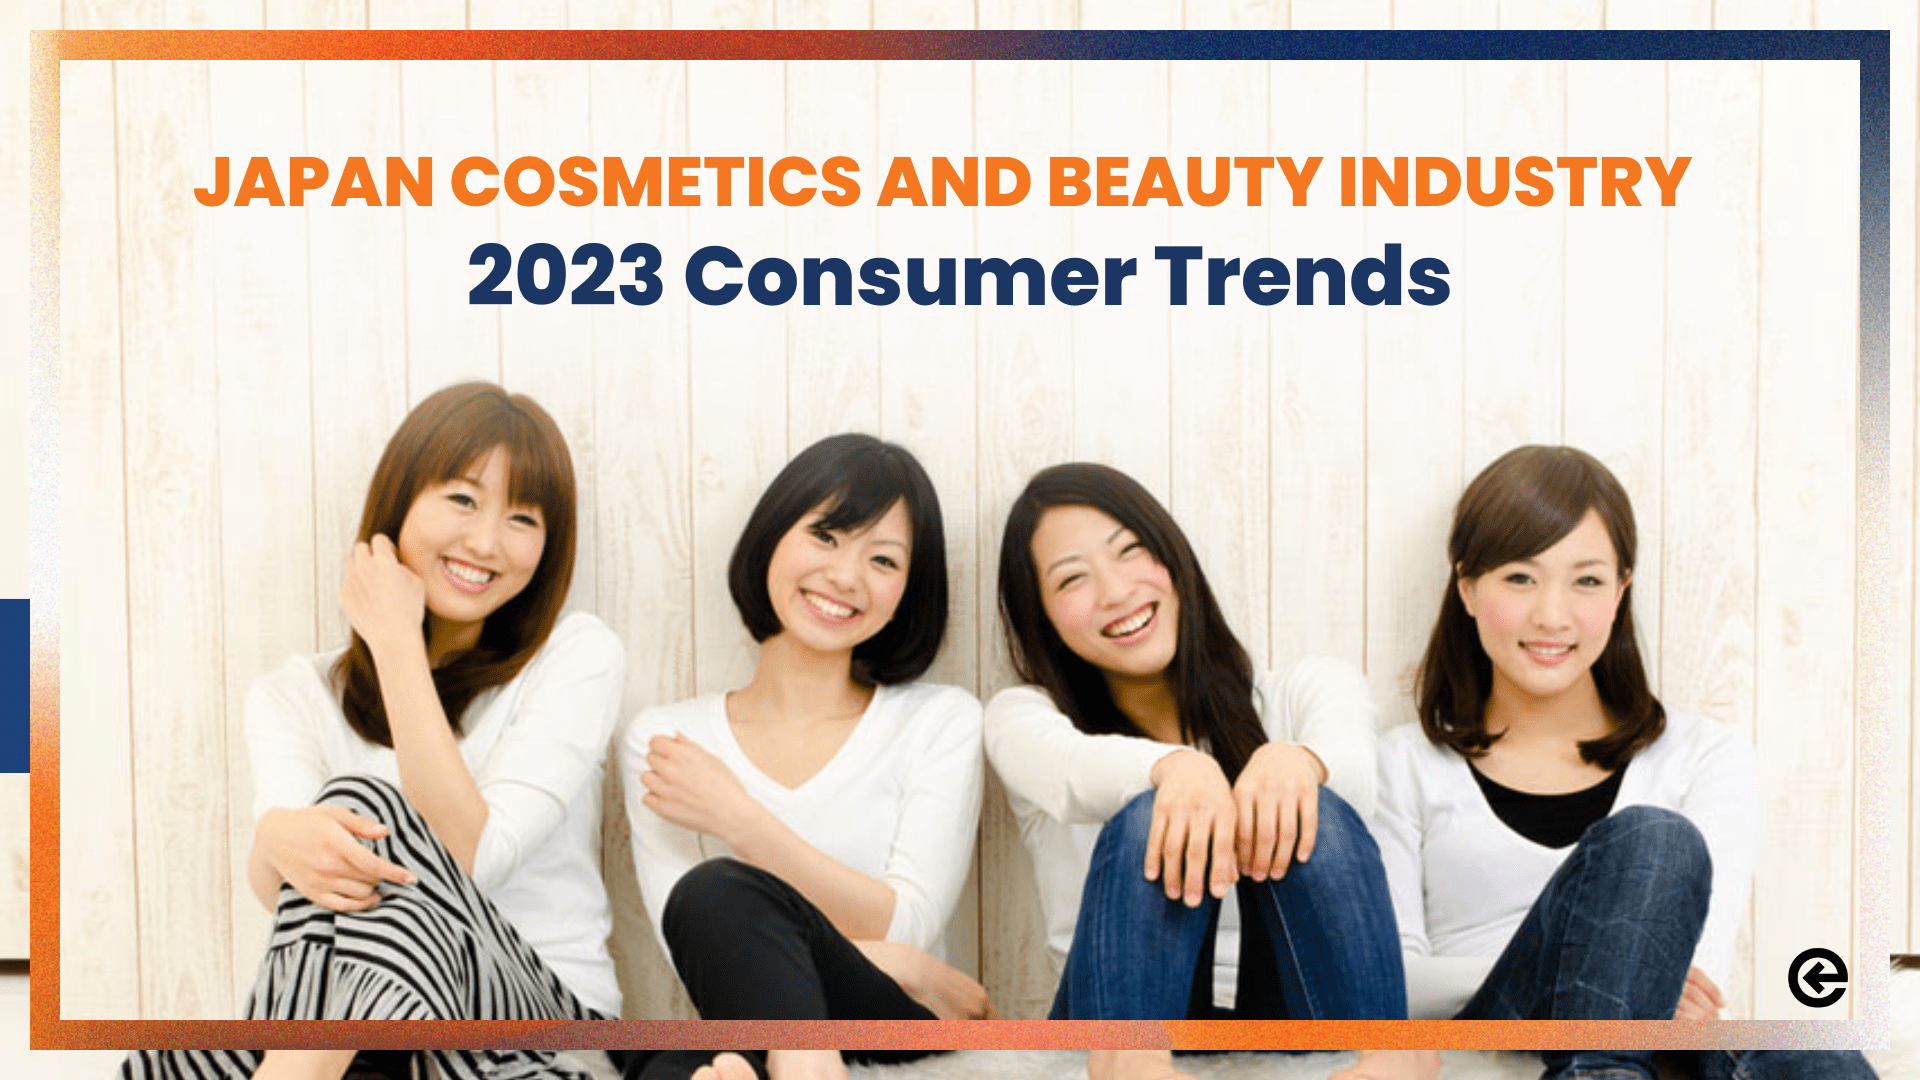 일본에서 번창하는 화장품 뷰티 산업: 2023년 소비자 트렌드 살펴보기 